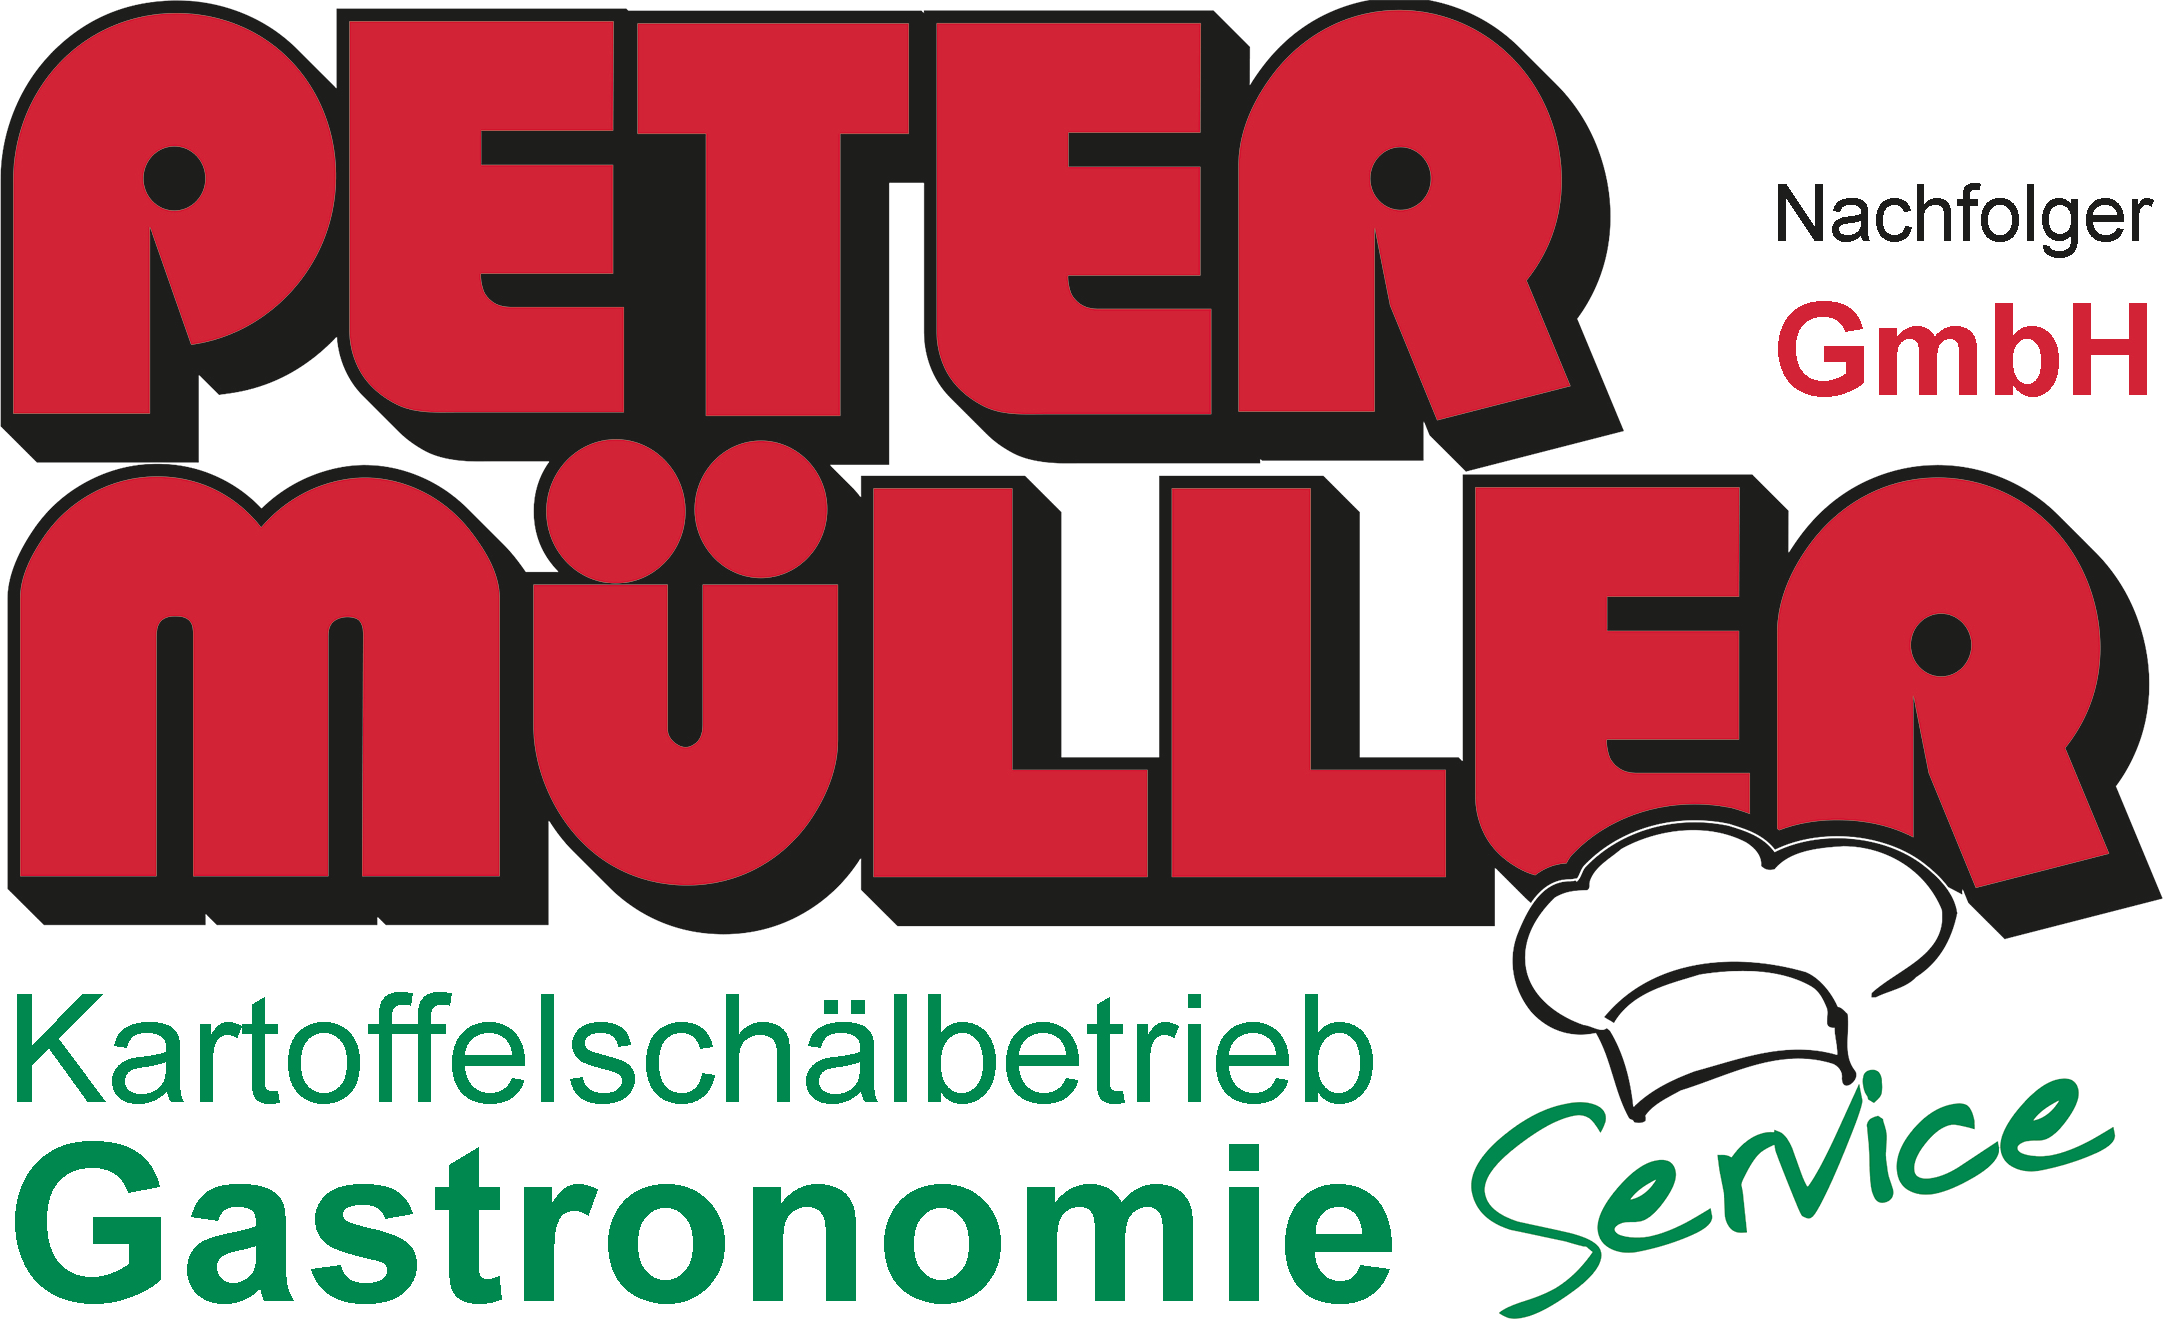 Peter Müller Nachfolger GmbH